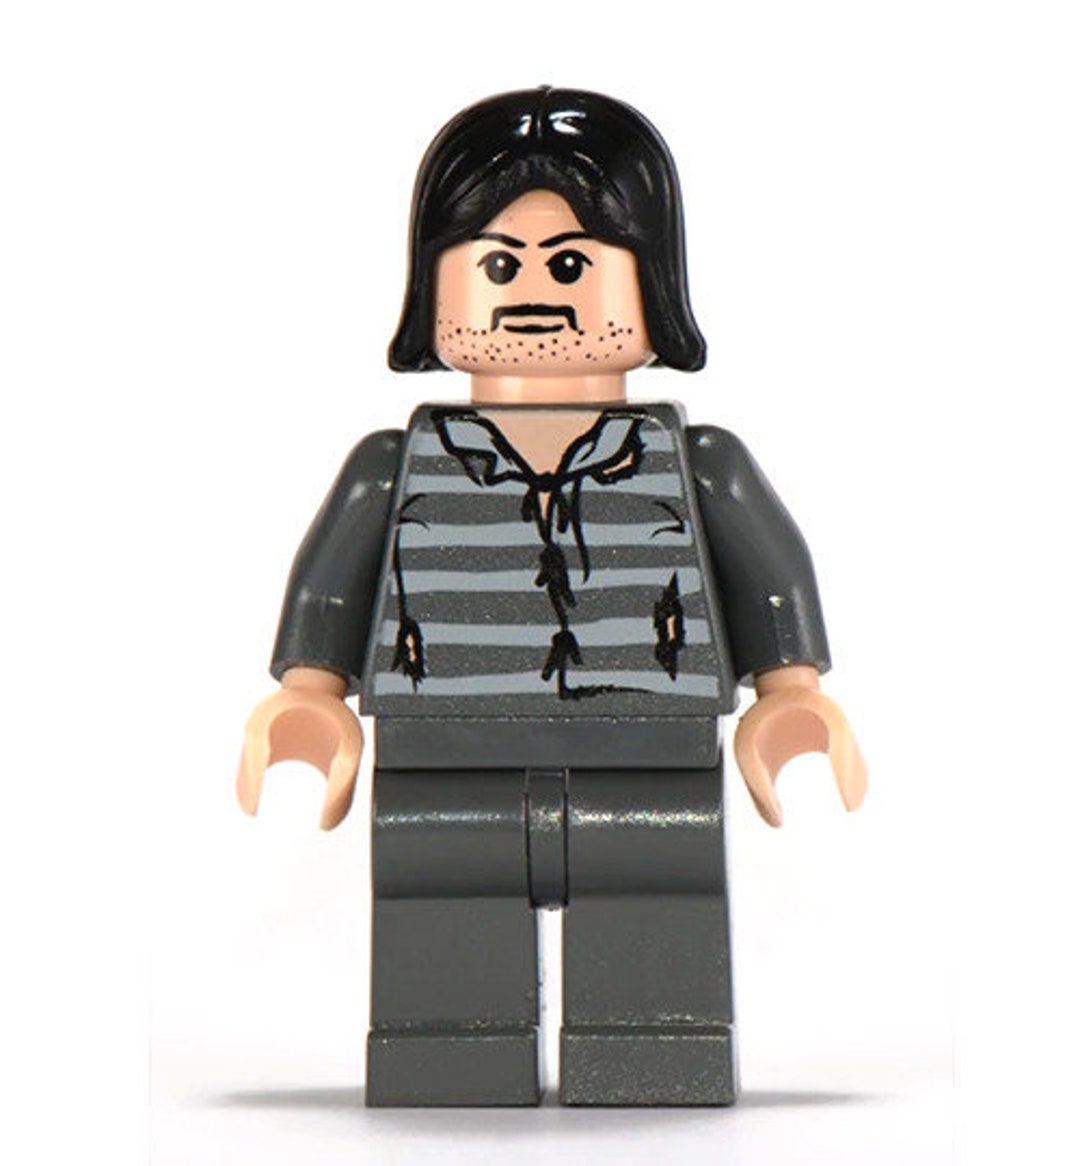 Lego Sirius 4753 Prisoner of Azkaban Potter - Etsy